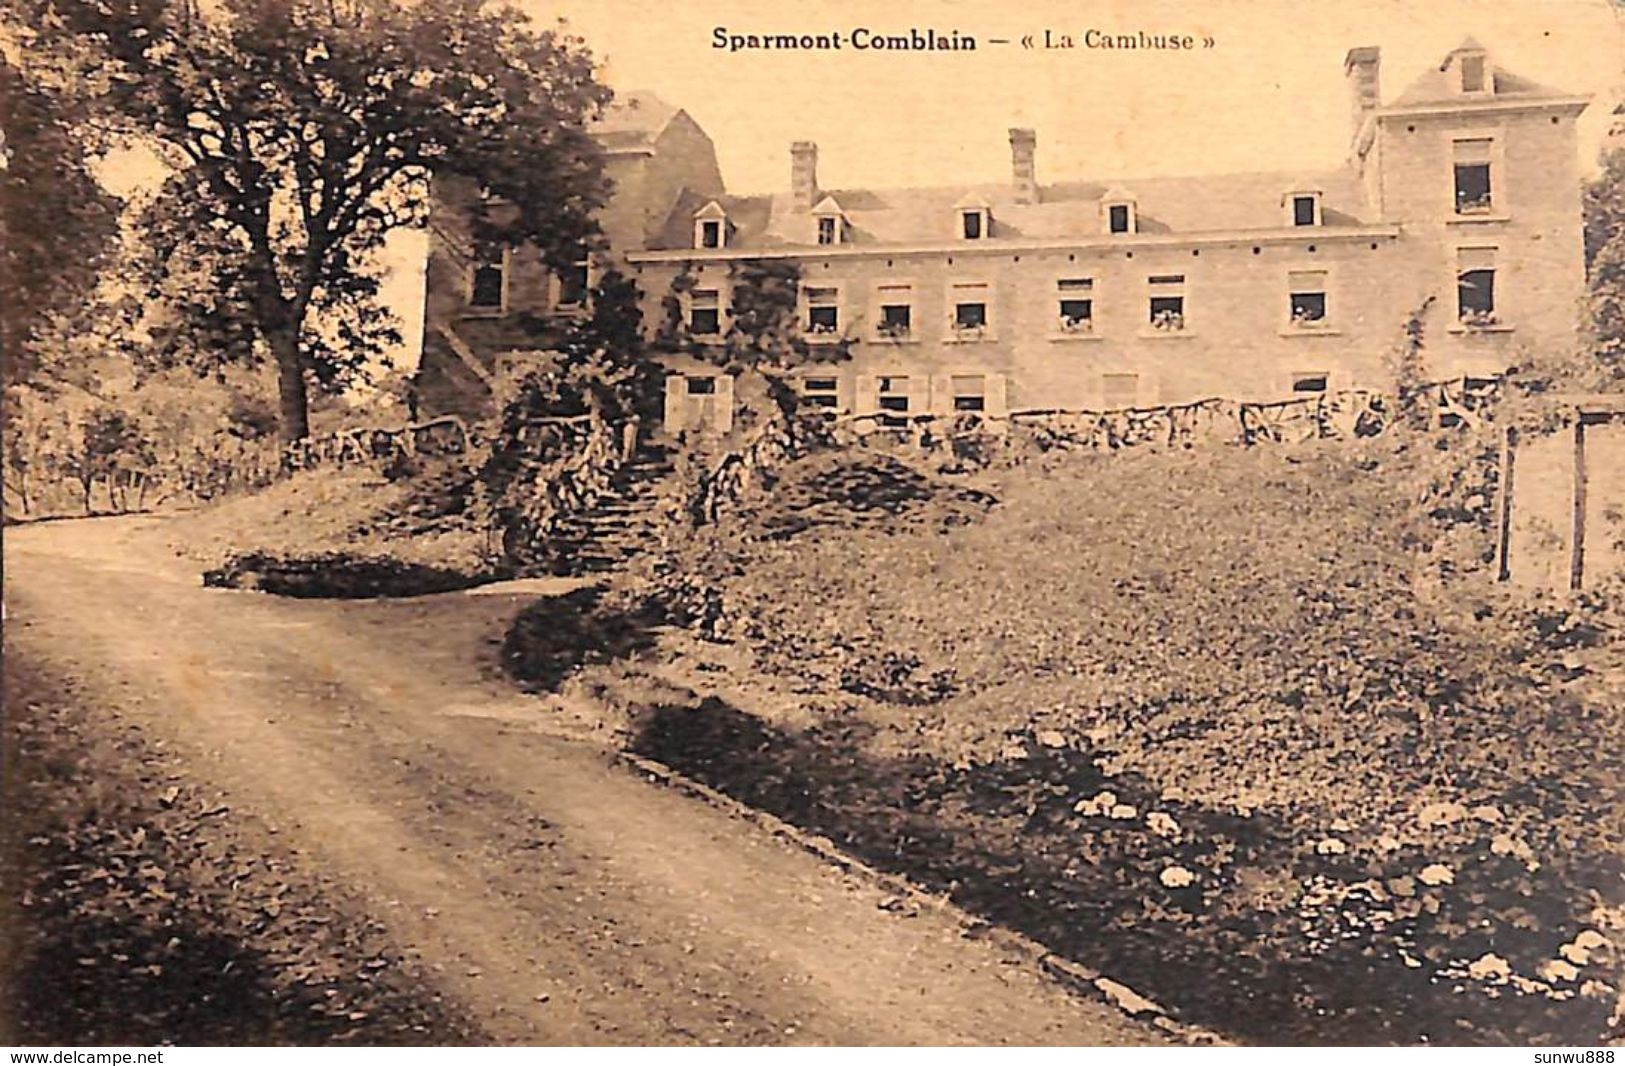 Sparmont-Comblain - La Cambuse (Desaix, Edit. Ledoux-Demblon - Hamoir